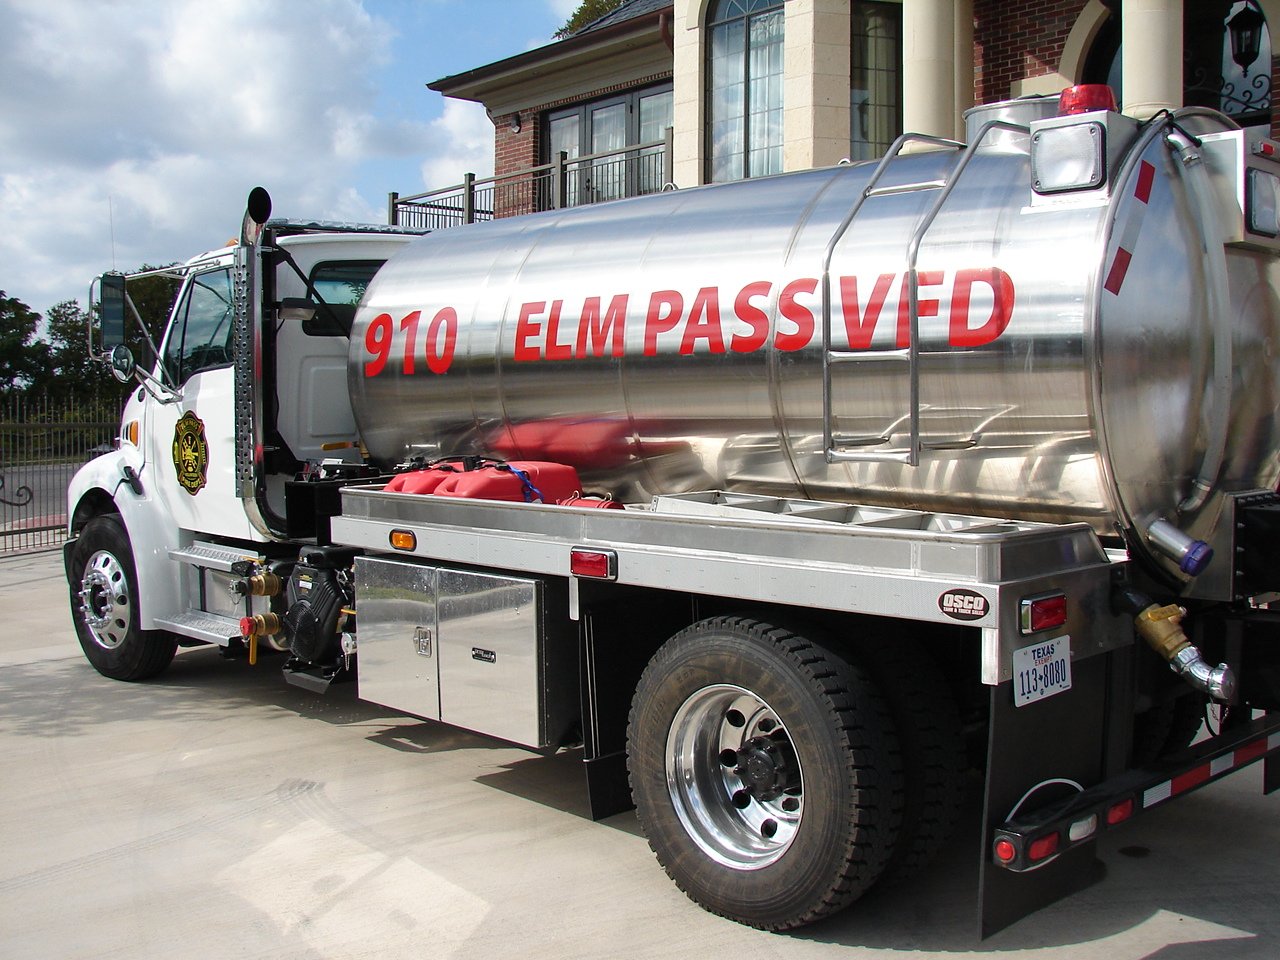   2011 - Elm Pass Volunteer Fire Department tanker truck, Center Point, Texas  